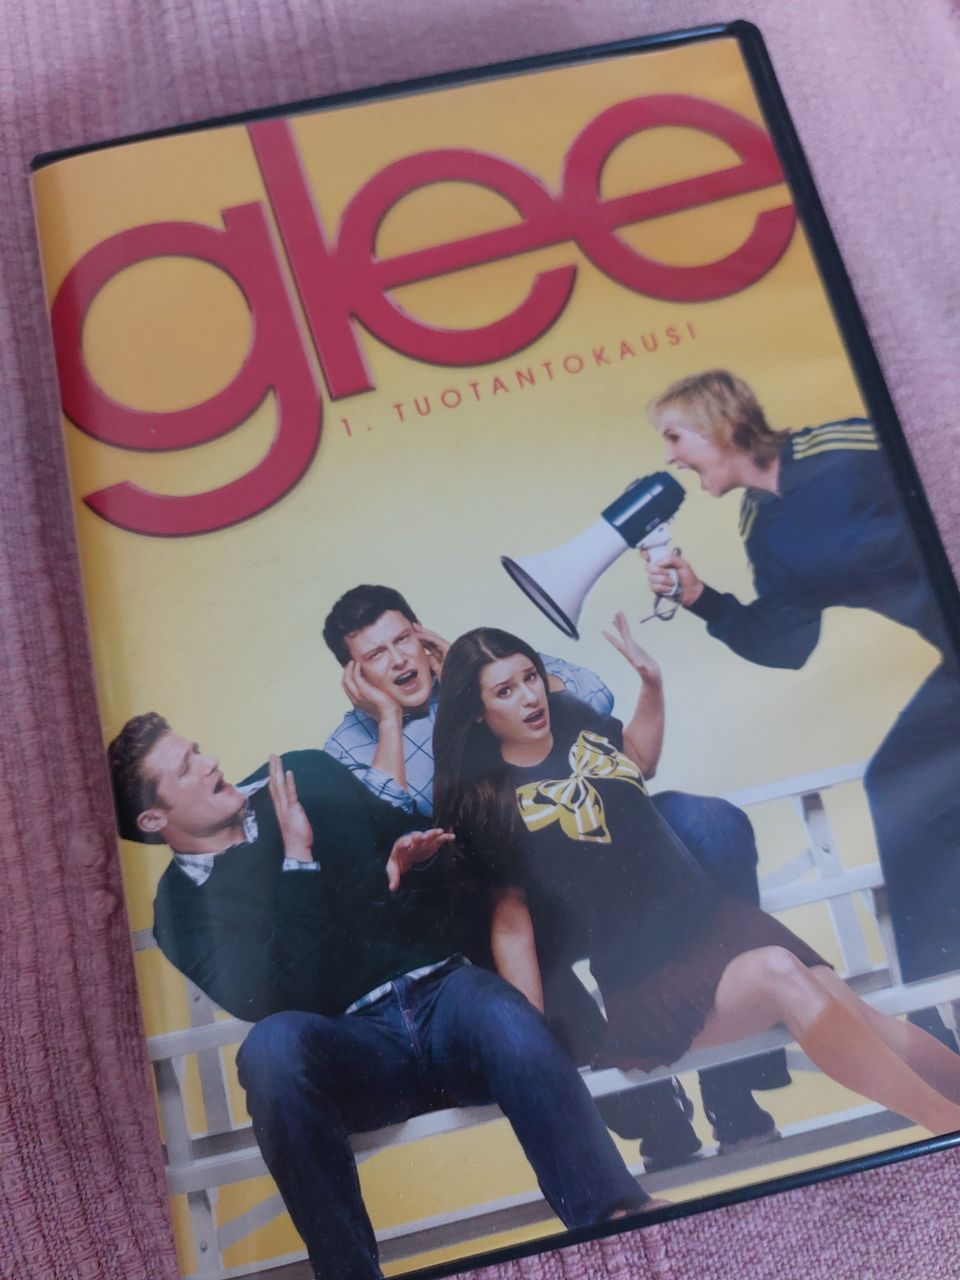 Glee 1. tuotantokausi